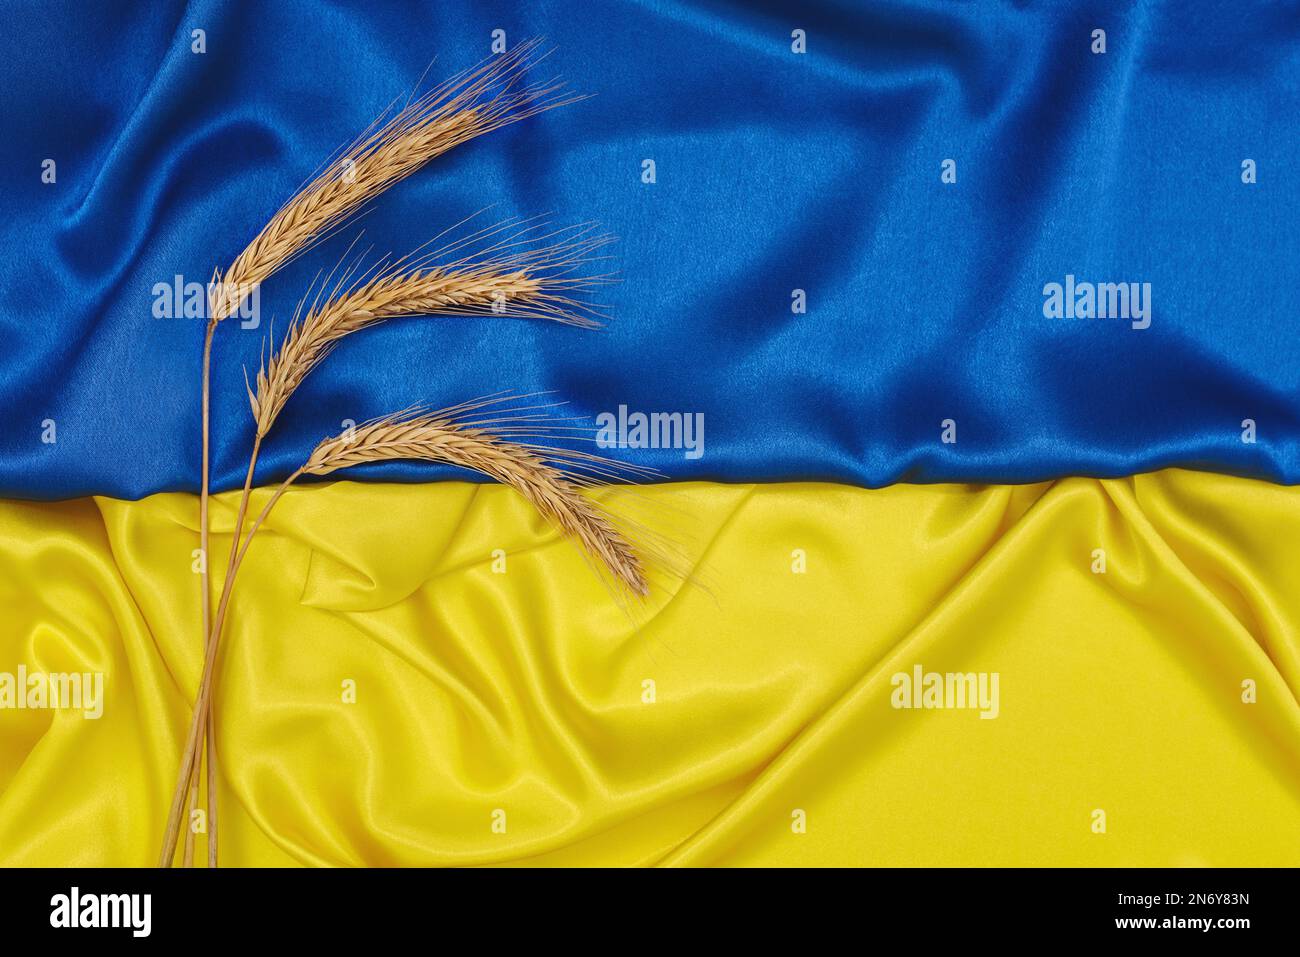 Goldene Weizenspitzen auf blau-gelber Seidenflagge der Ukraine. Tag der Unabhängigkeit der Ukraine, Tag der Flagge. Landwirtschaftliches Land. Konzept von Einheit, Unterstützung und Sieg. Stockfoto